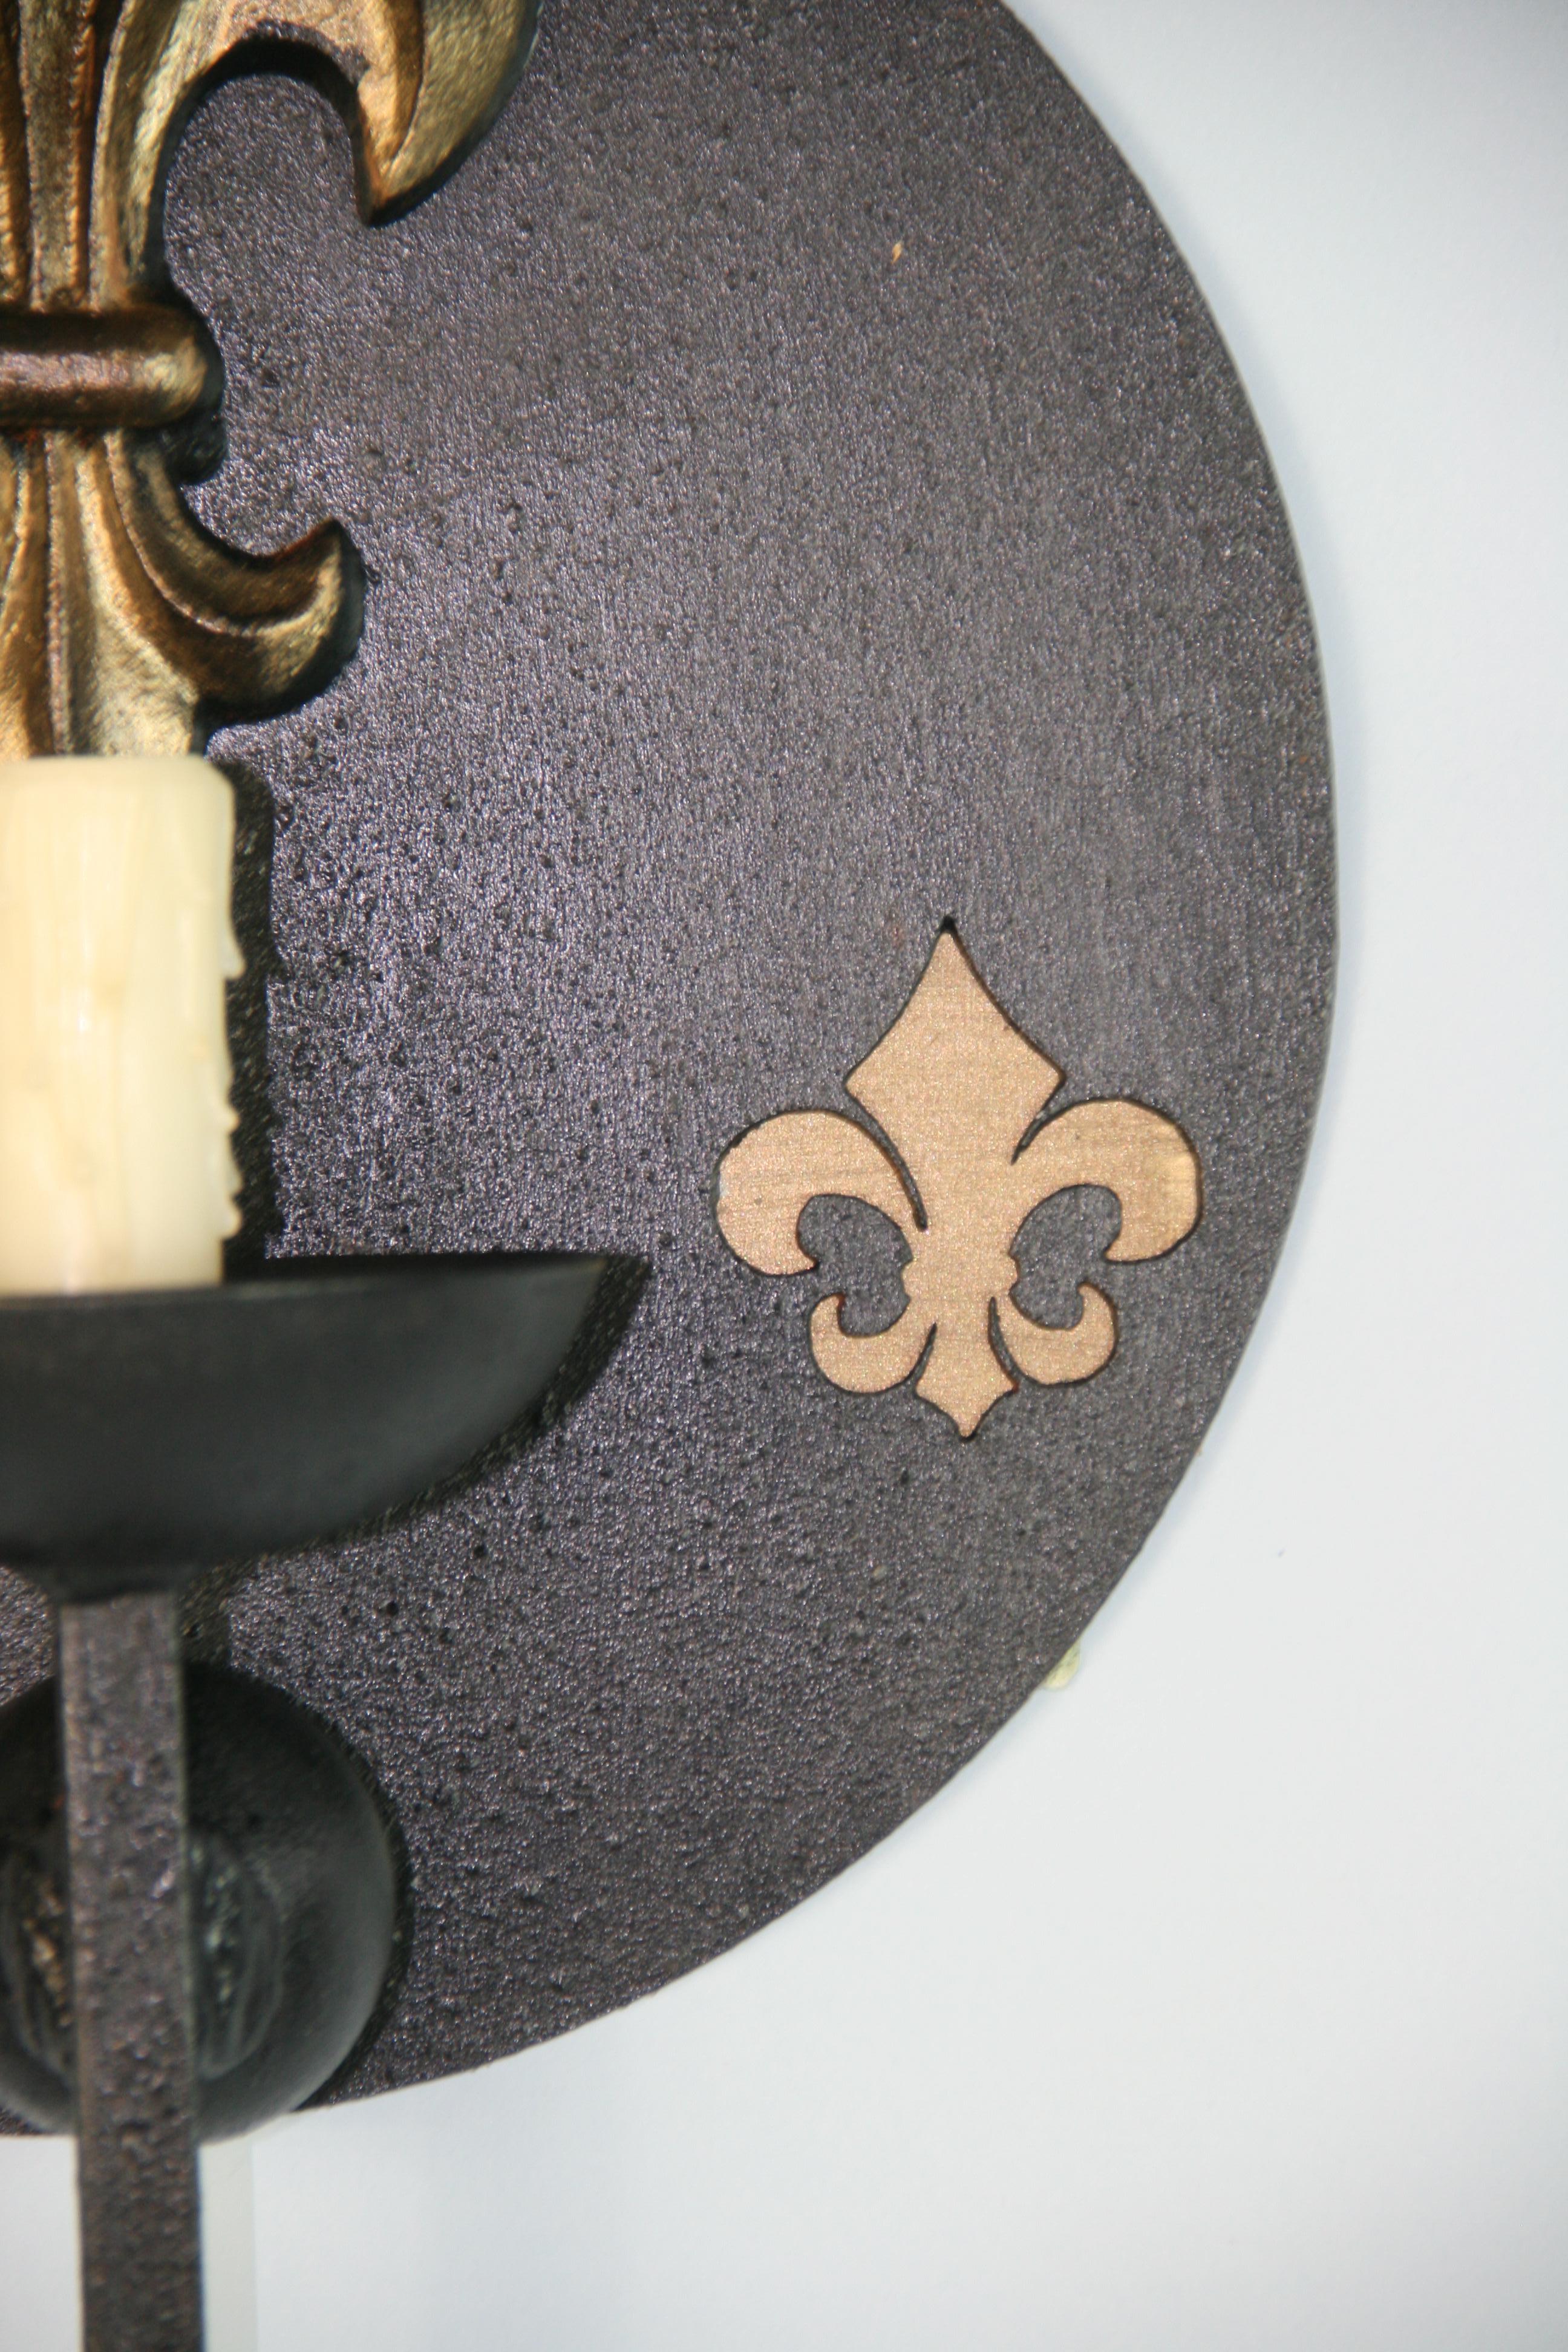 French Pair Fleur De Leis Black Iron Oversized Sconces 1960's For Sale 2